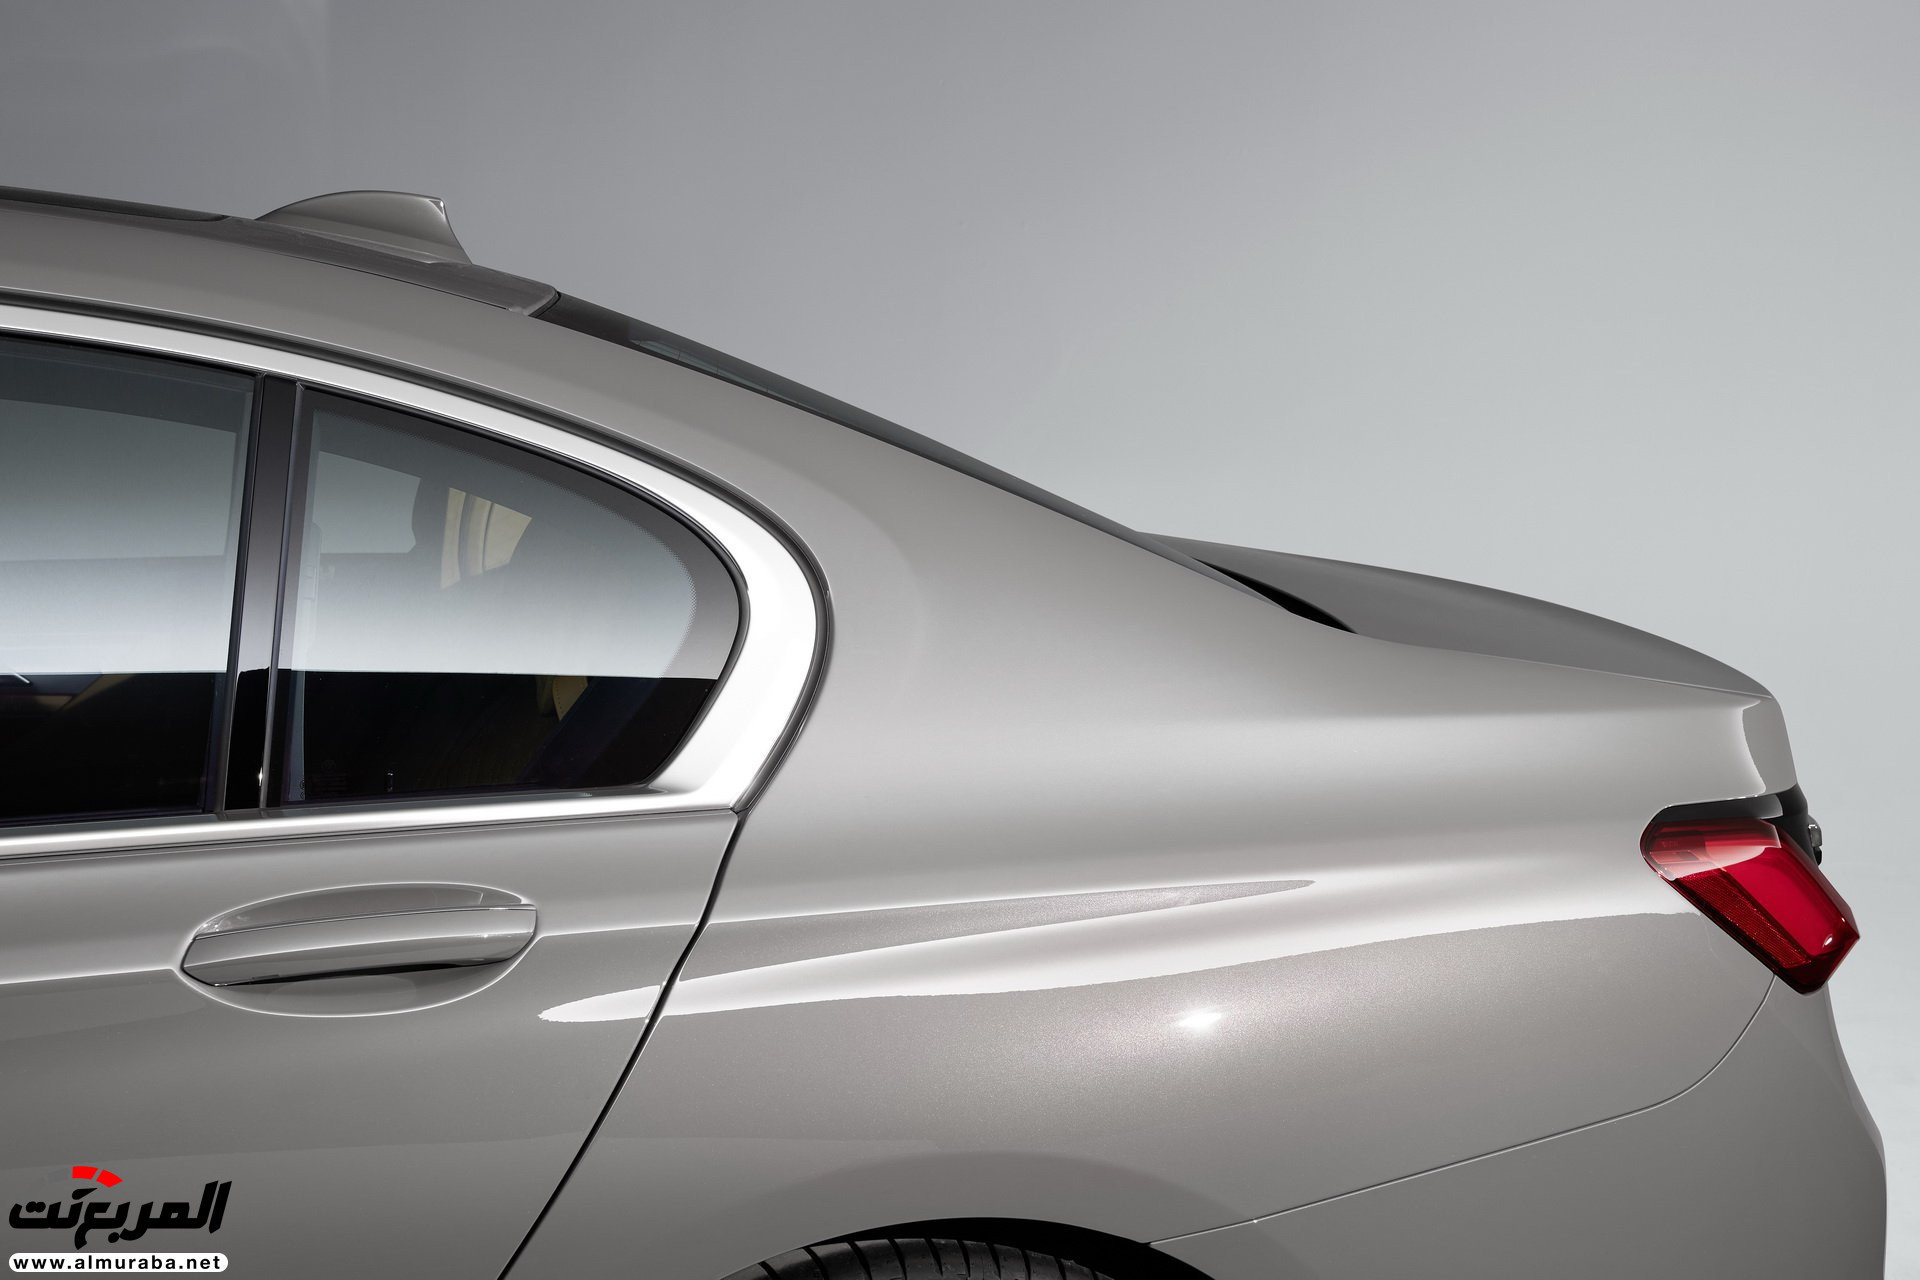 بي ام دبليو الفئة السابعة 2020 المحدثة تكشف نفسها رسمياً "صور ومواصفات" BMW 7 Series 243